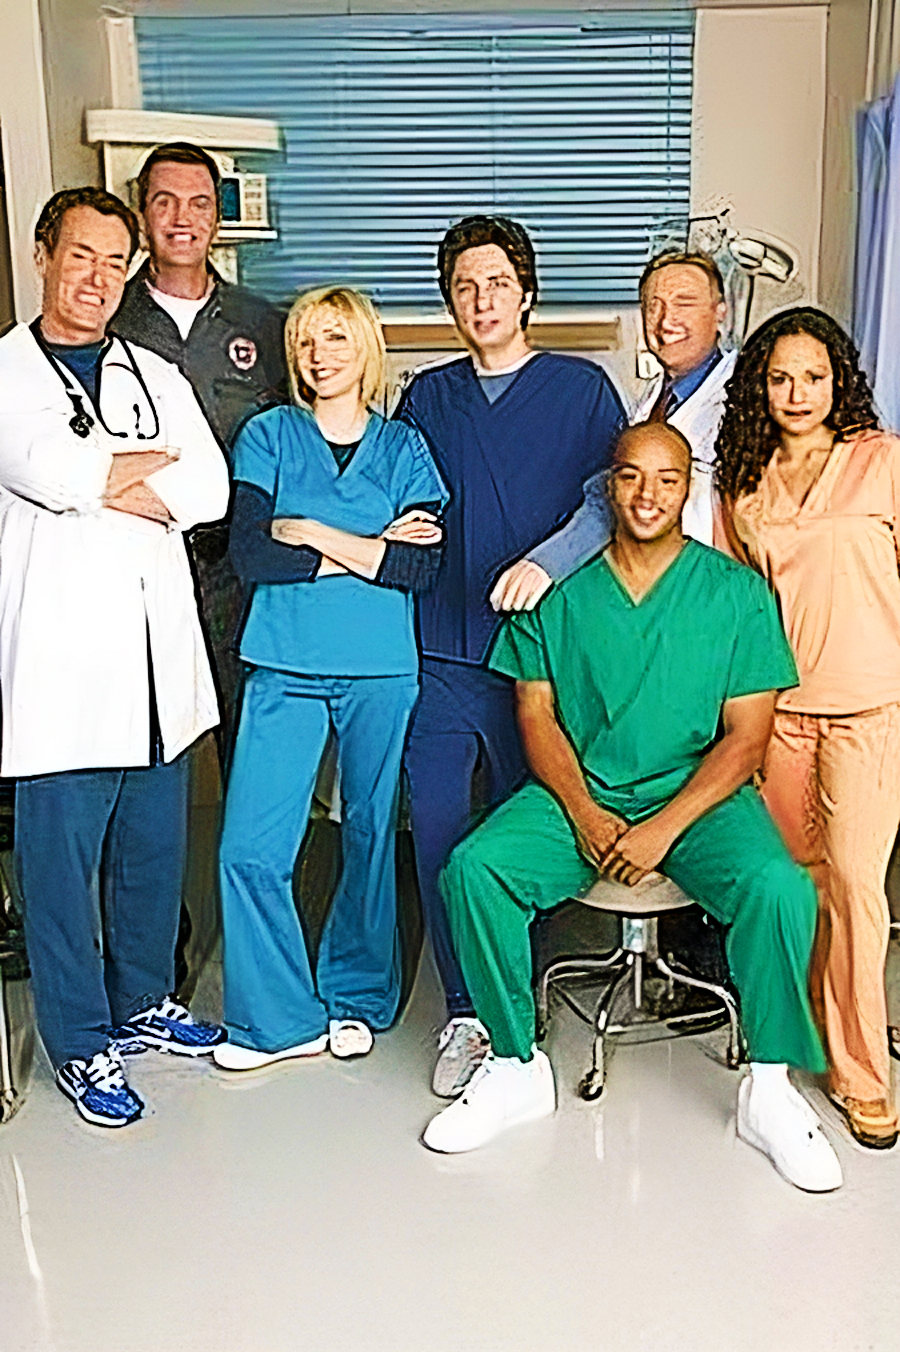 Реакция девушки на сериал "Клиника" [Сезон 1️⃣ Серия 5️⃣] #Scrubs (2001-2010) ?? ТГ: @SHeremetick5